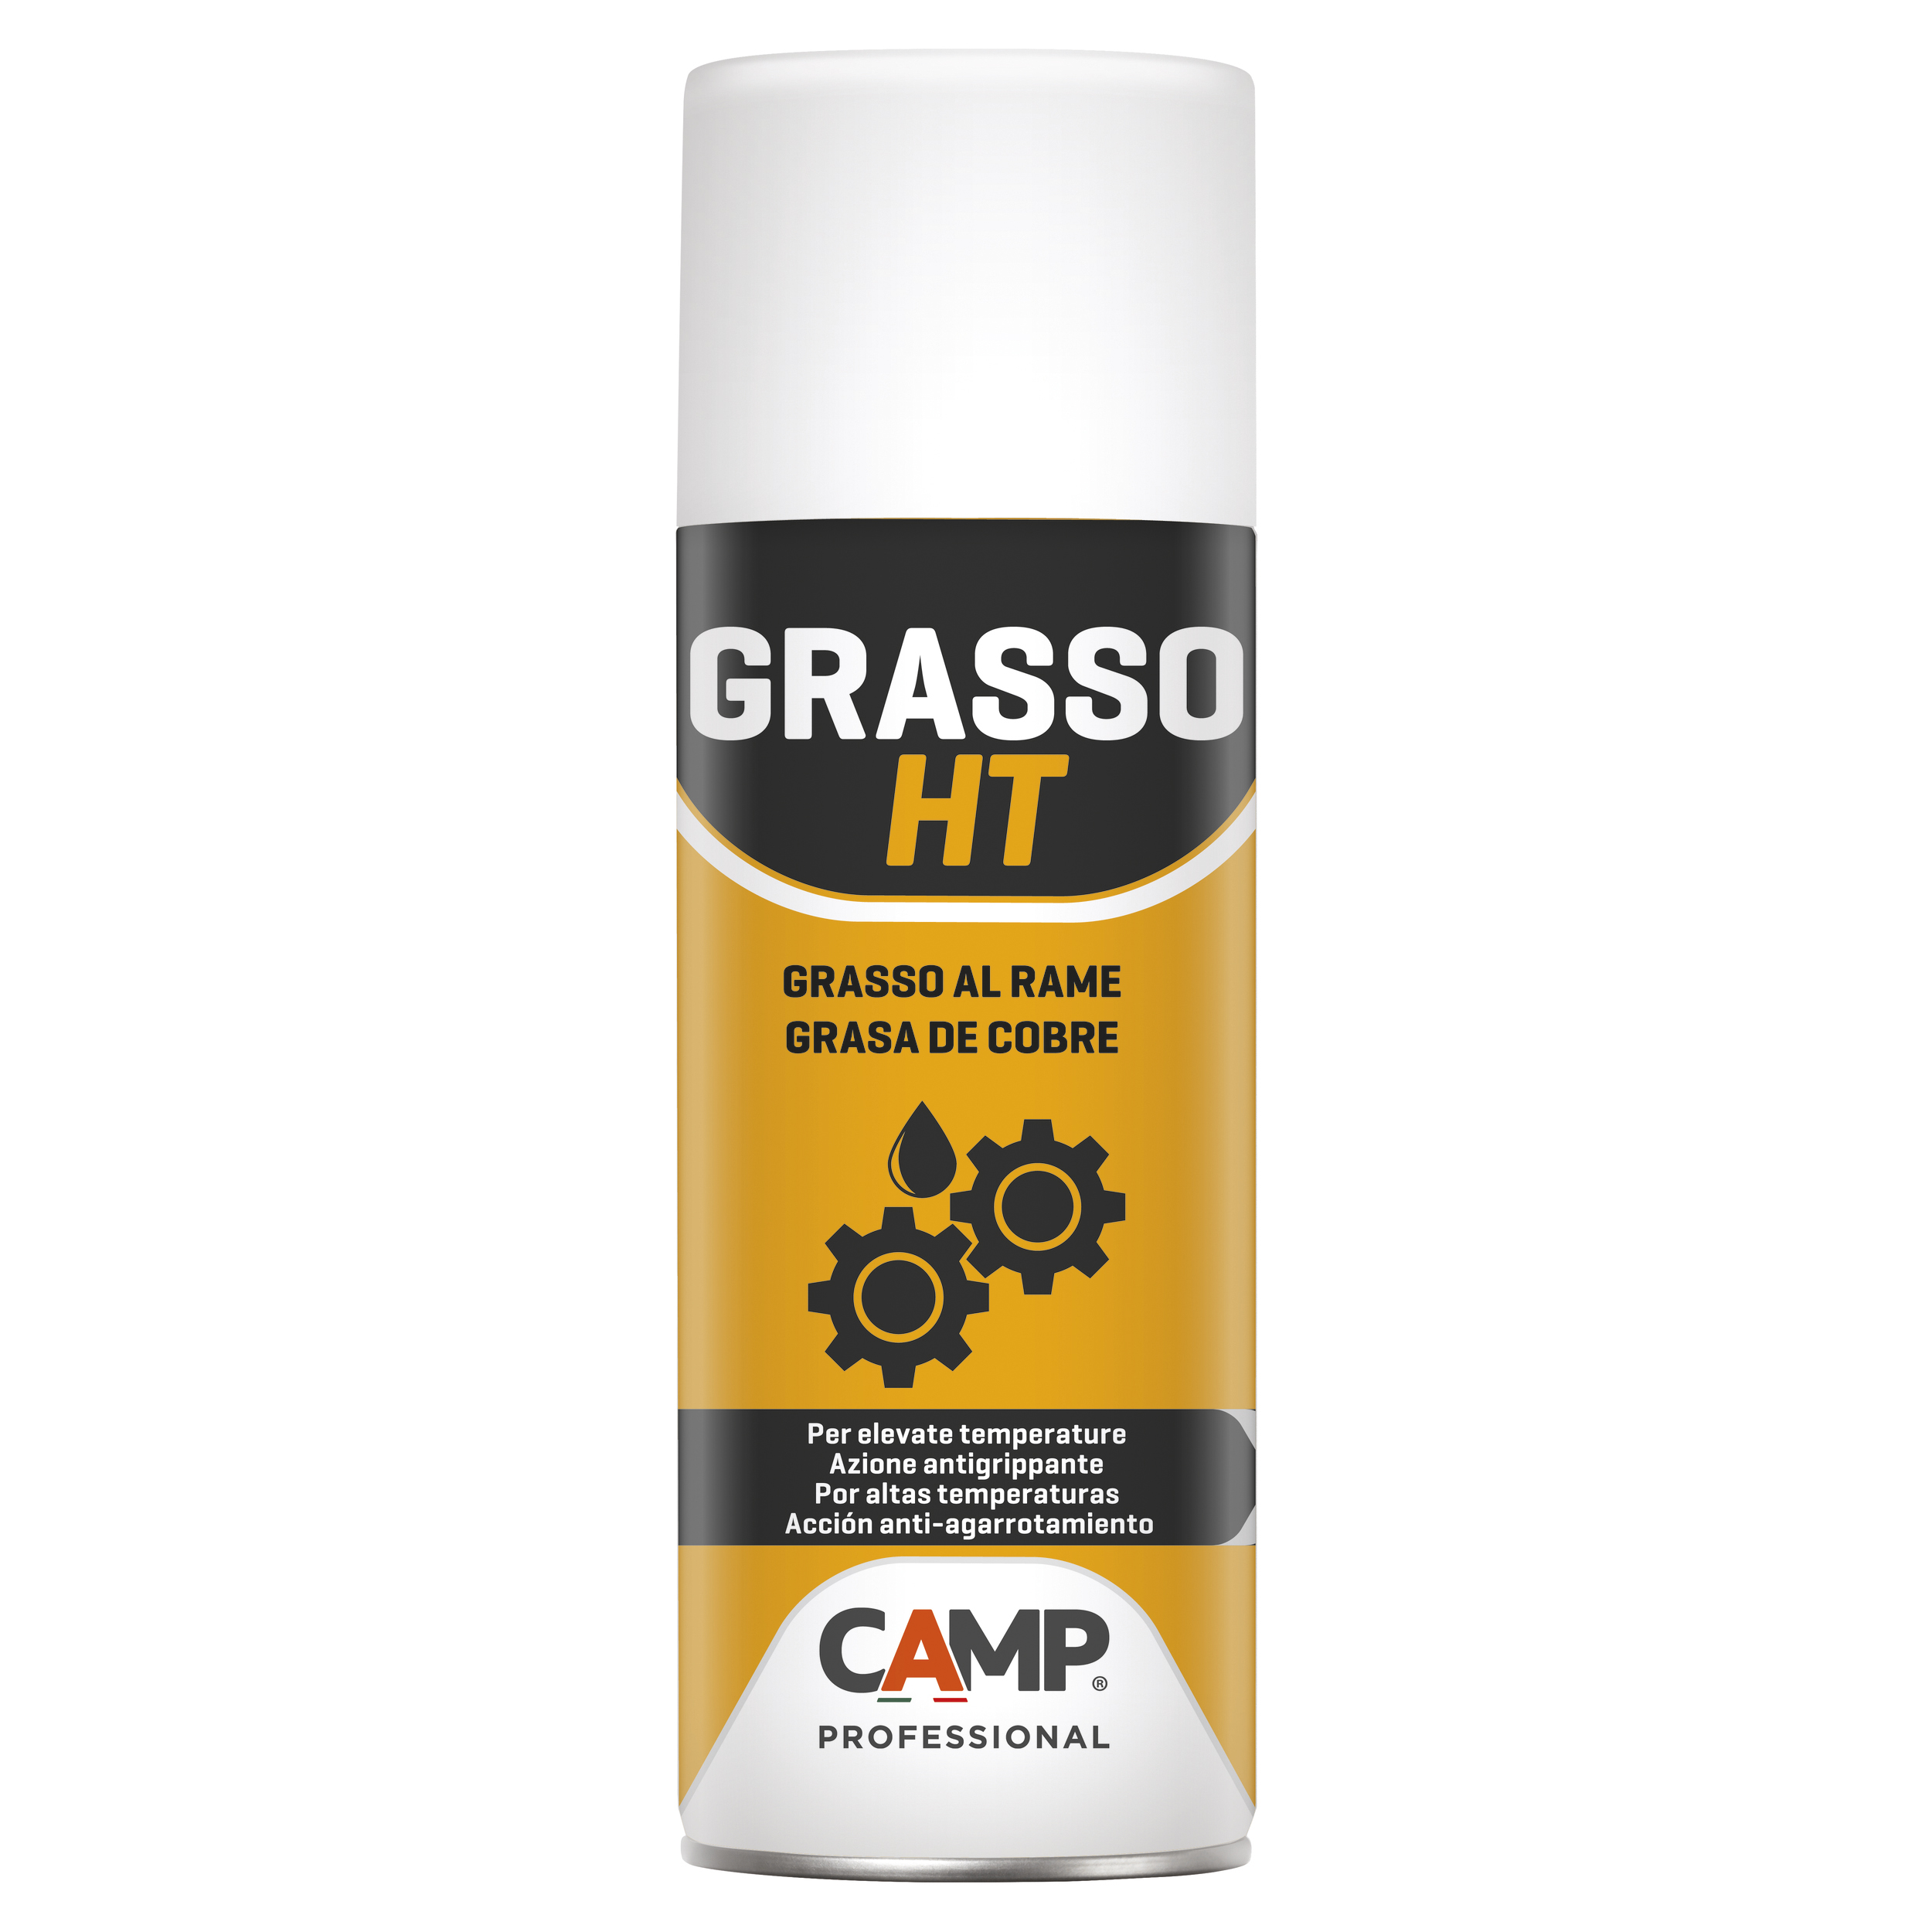 CAMP Pasta lubricante de cobre antiadherente para altas temperaturas GRASSO  HT